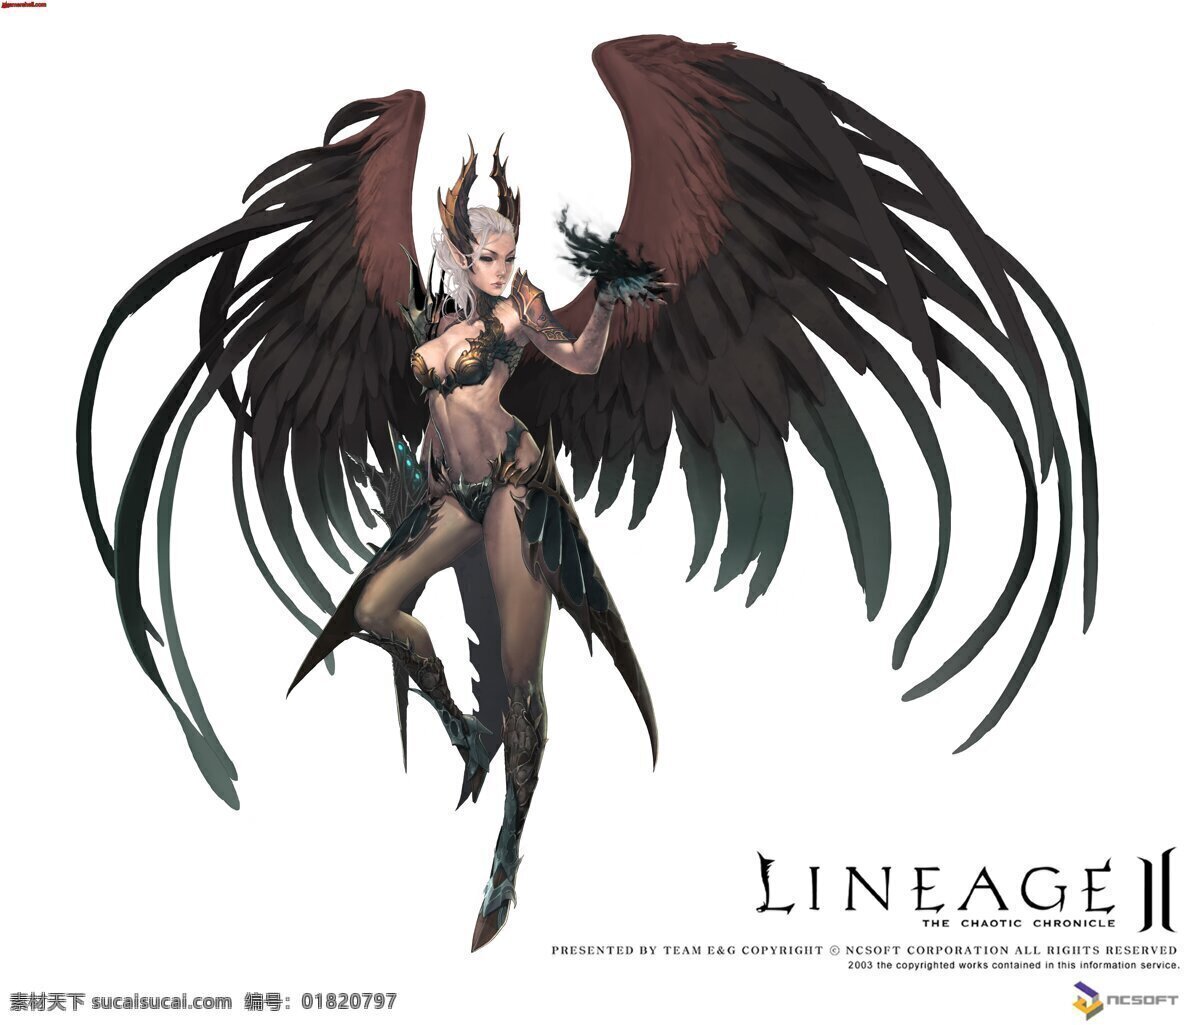 天堂2 天堂 女 翅膀 黑暗 肌肉 游戏 原画 概念 黑丝 美女 性感 动漫人物 动漫动画